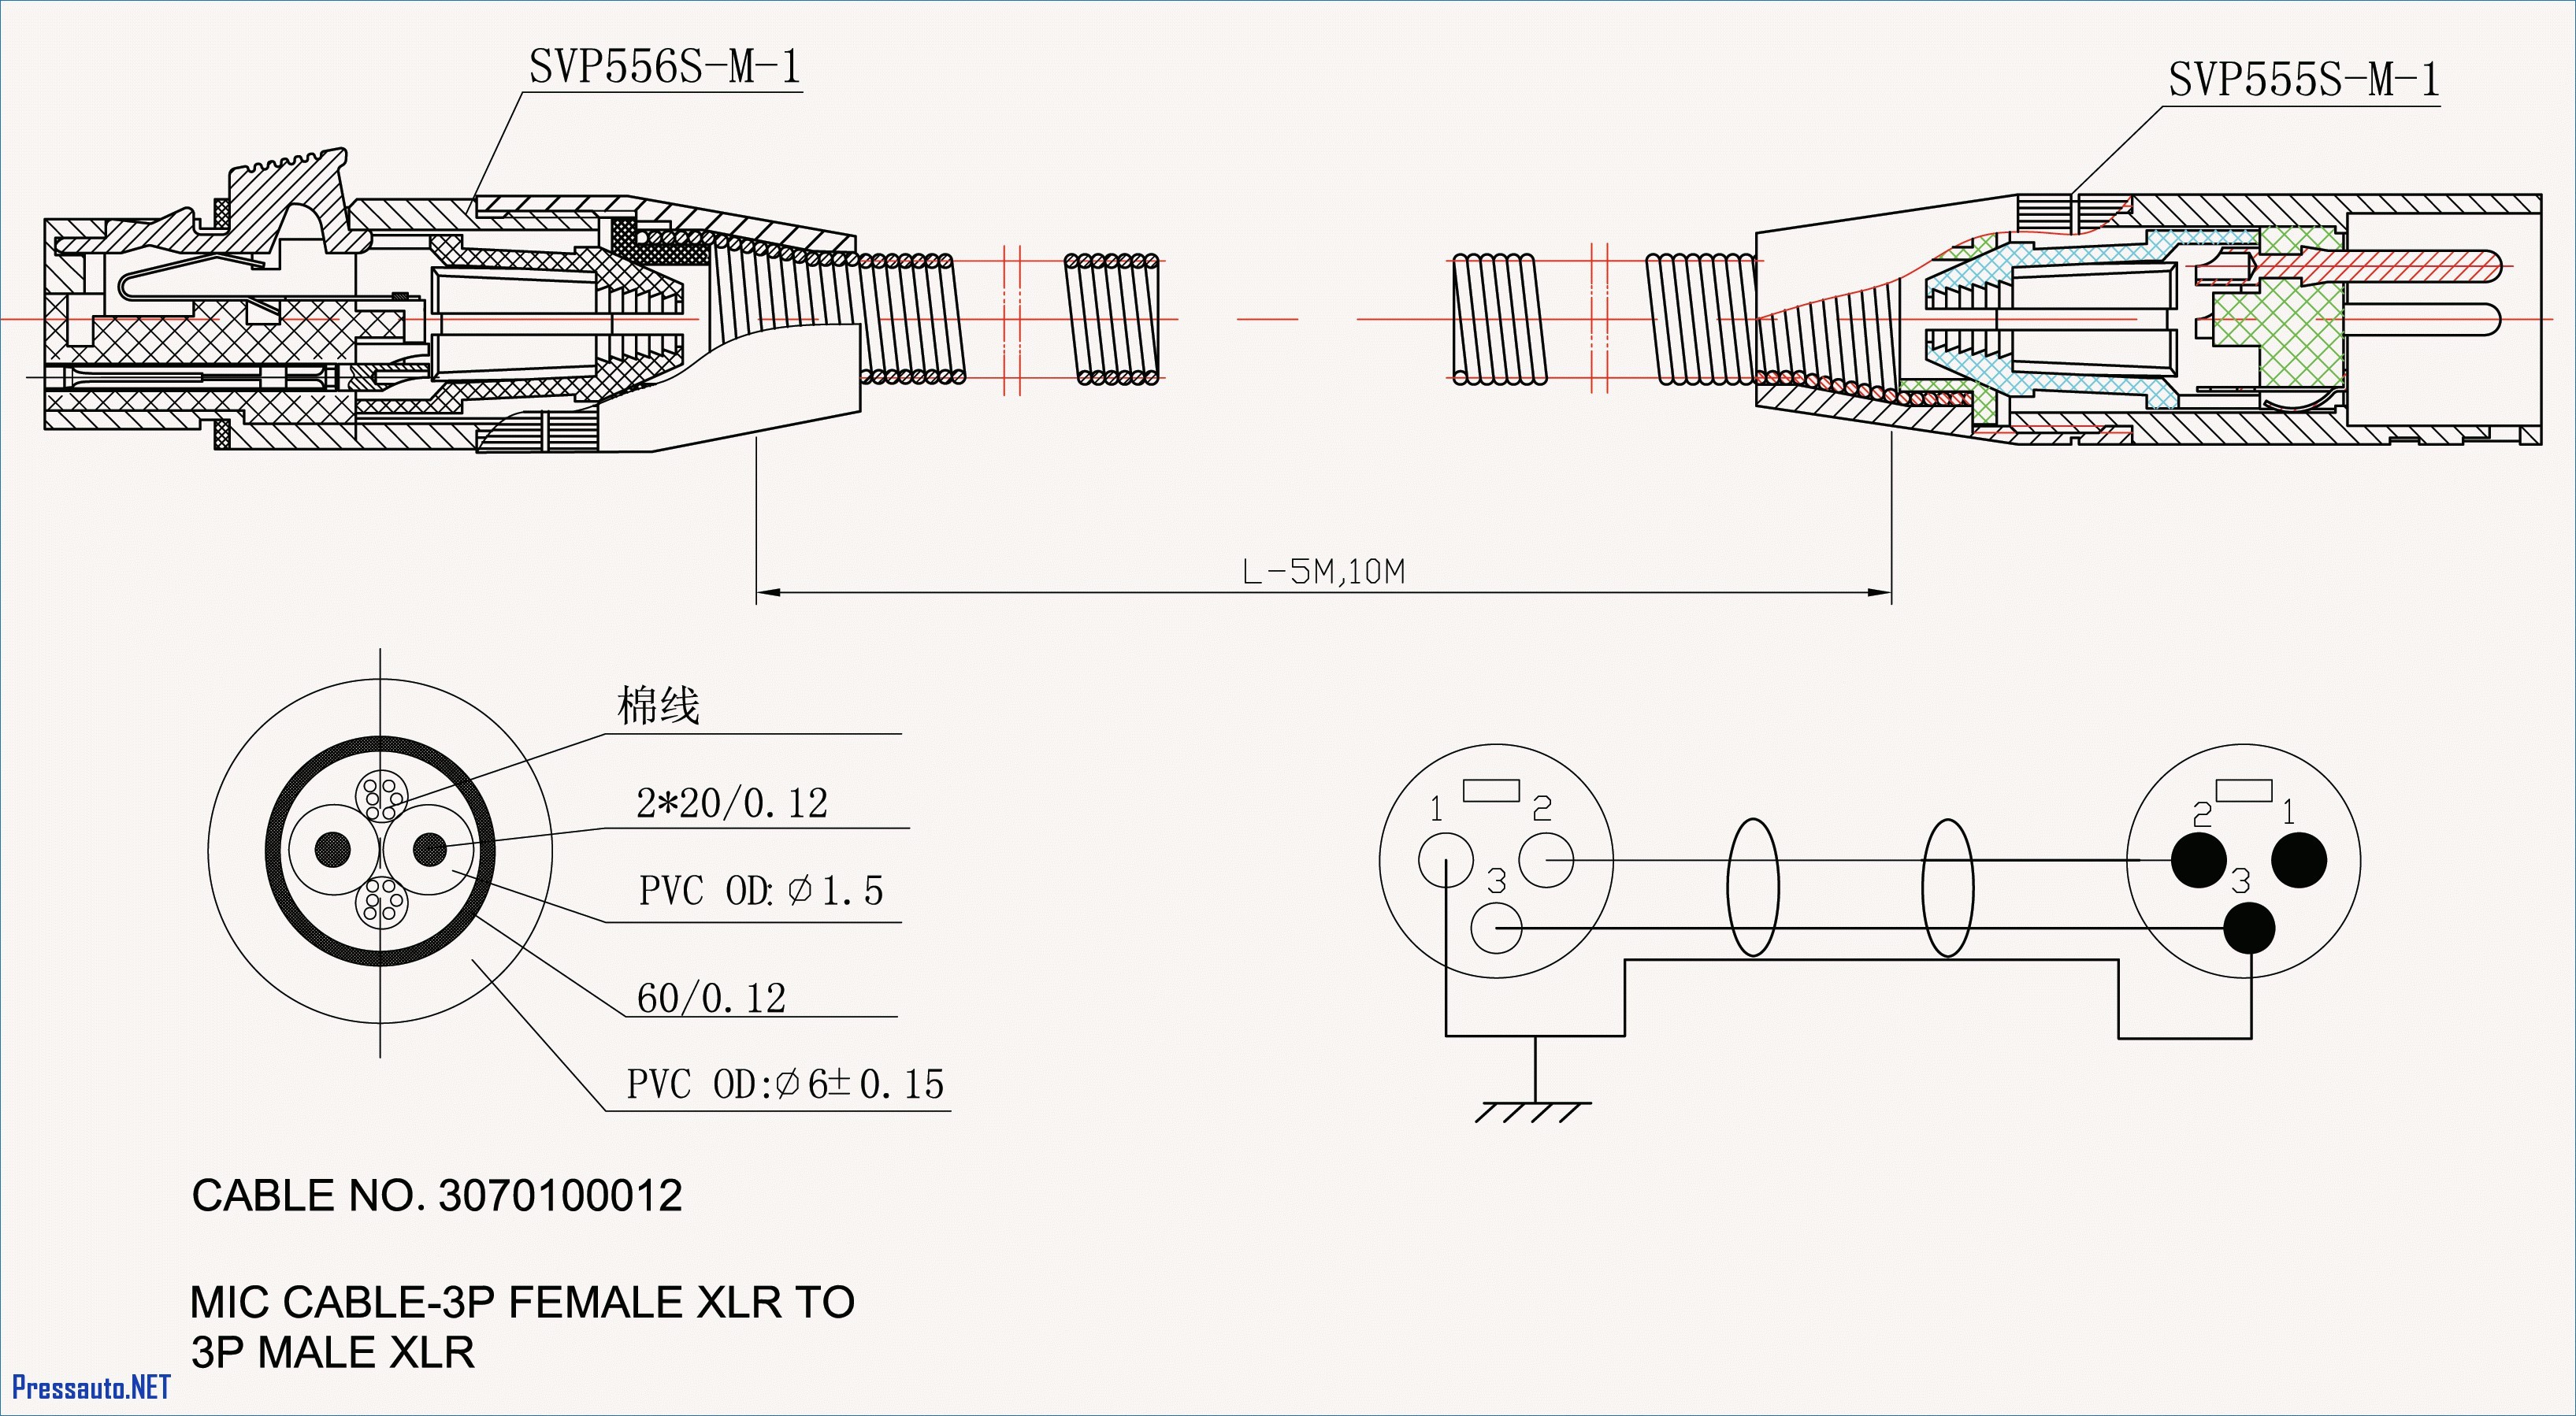 X5 Trailer Wiring Diagram Best 5 Way Trailer Wiring Diagram Lovely